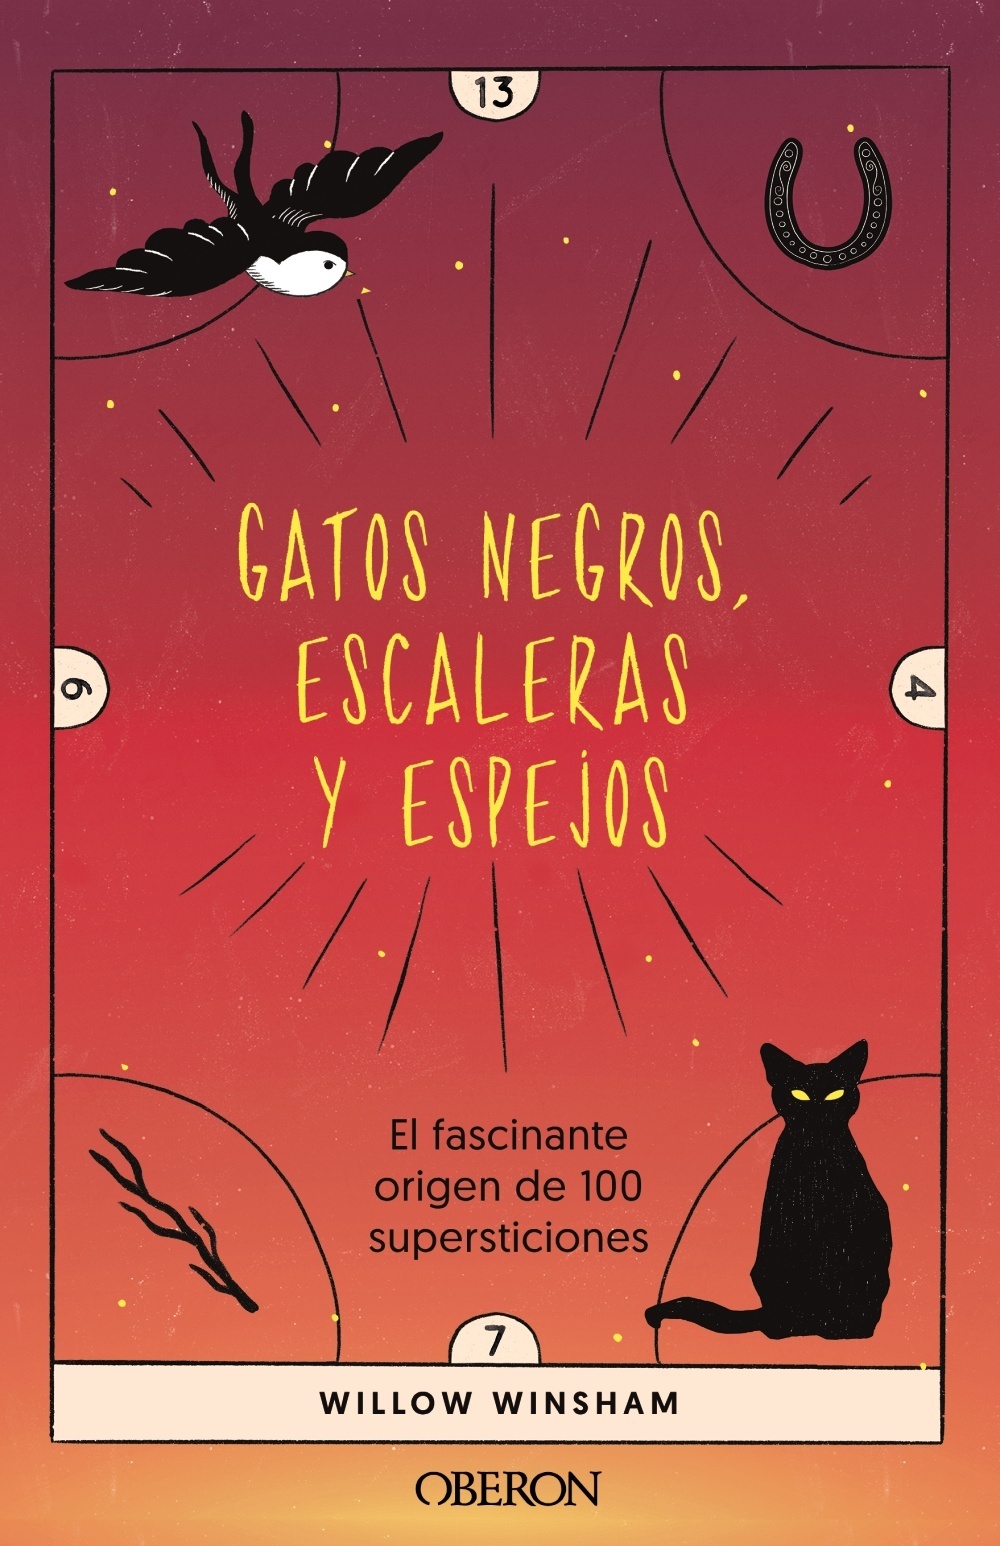 Gatos negros, escaleras y espejos "El fascinante origen de 100 supersticiones"